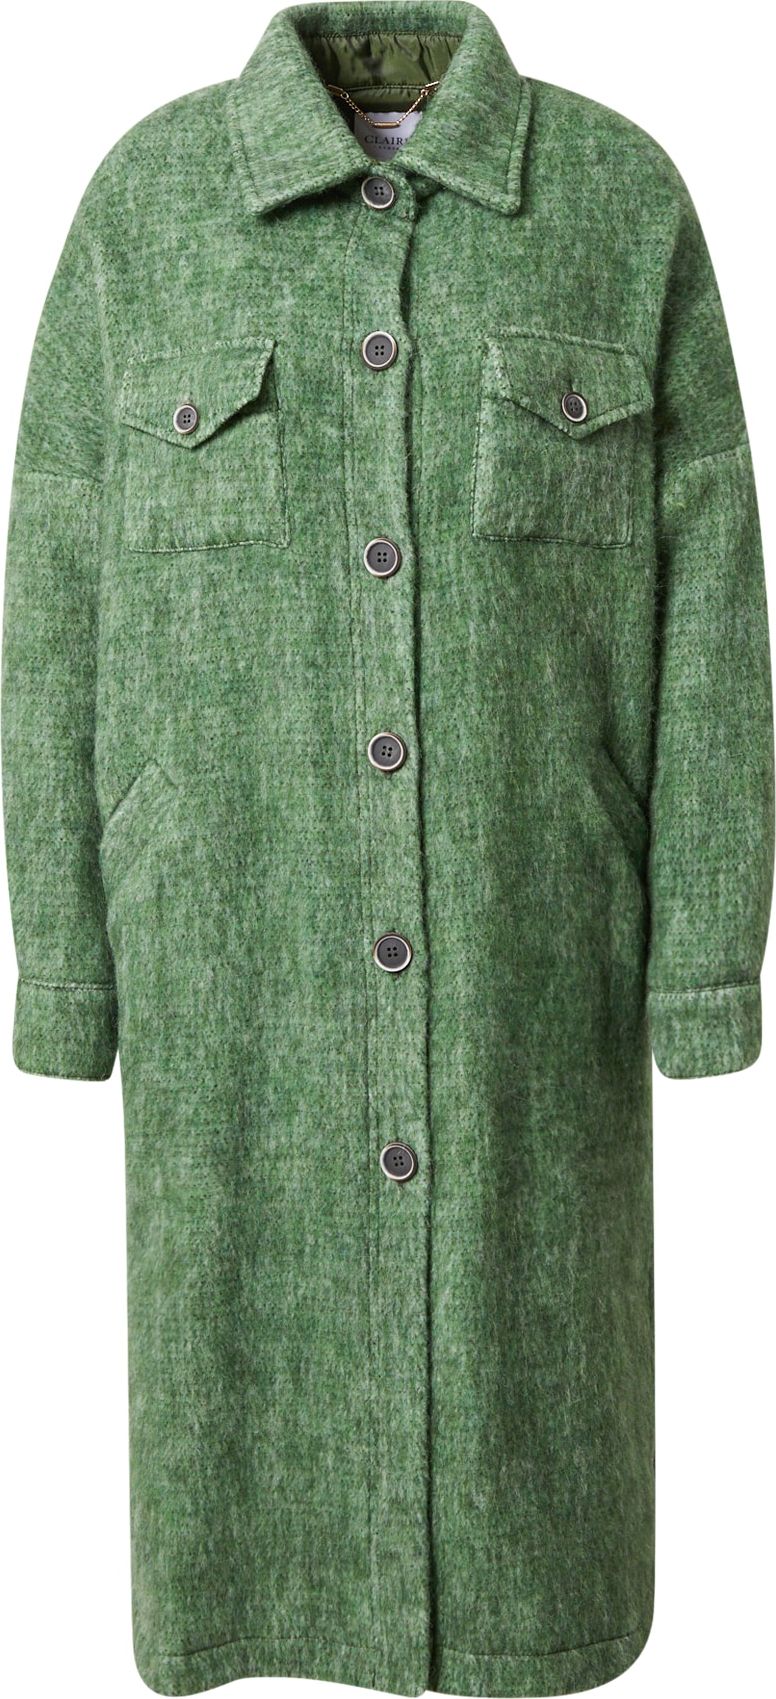 Claire Přechodný kabát 'Khloe' zelená